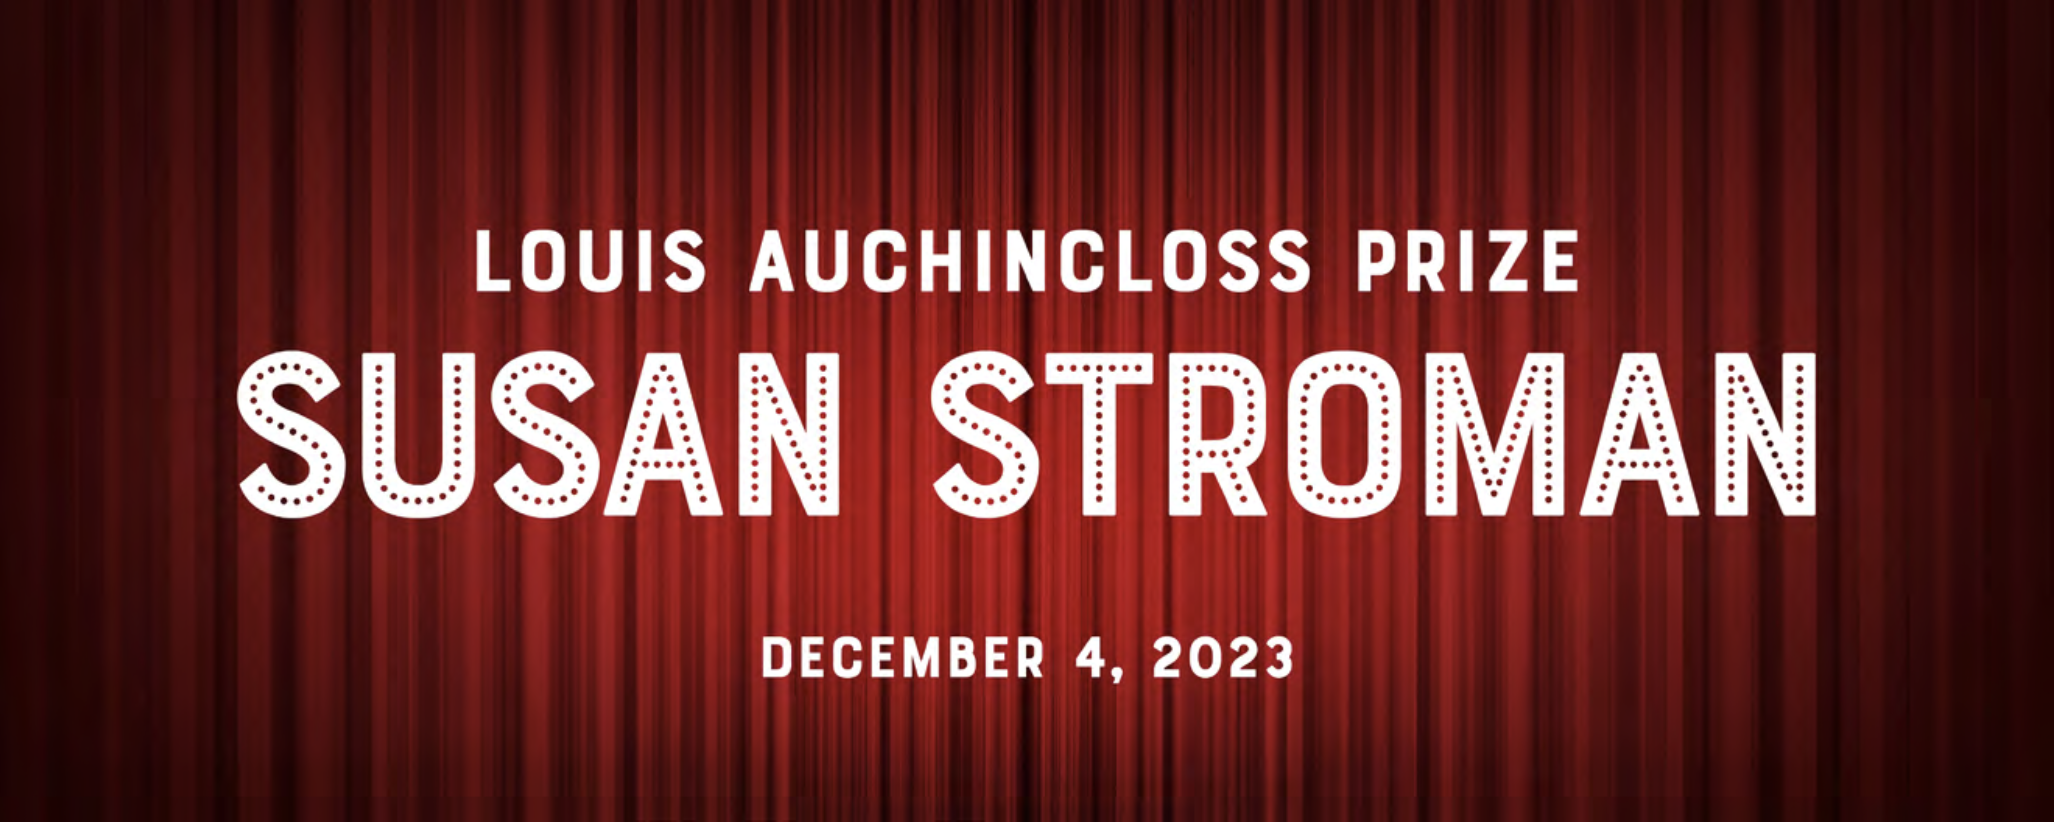 Premio Louis Auchincloss en honor a Susan Stroman